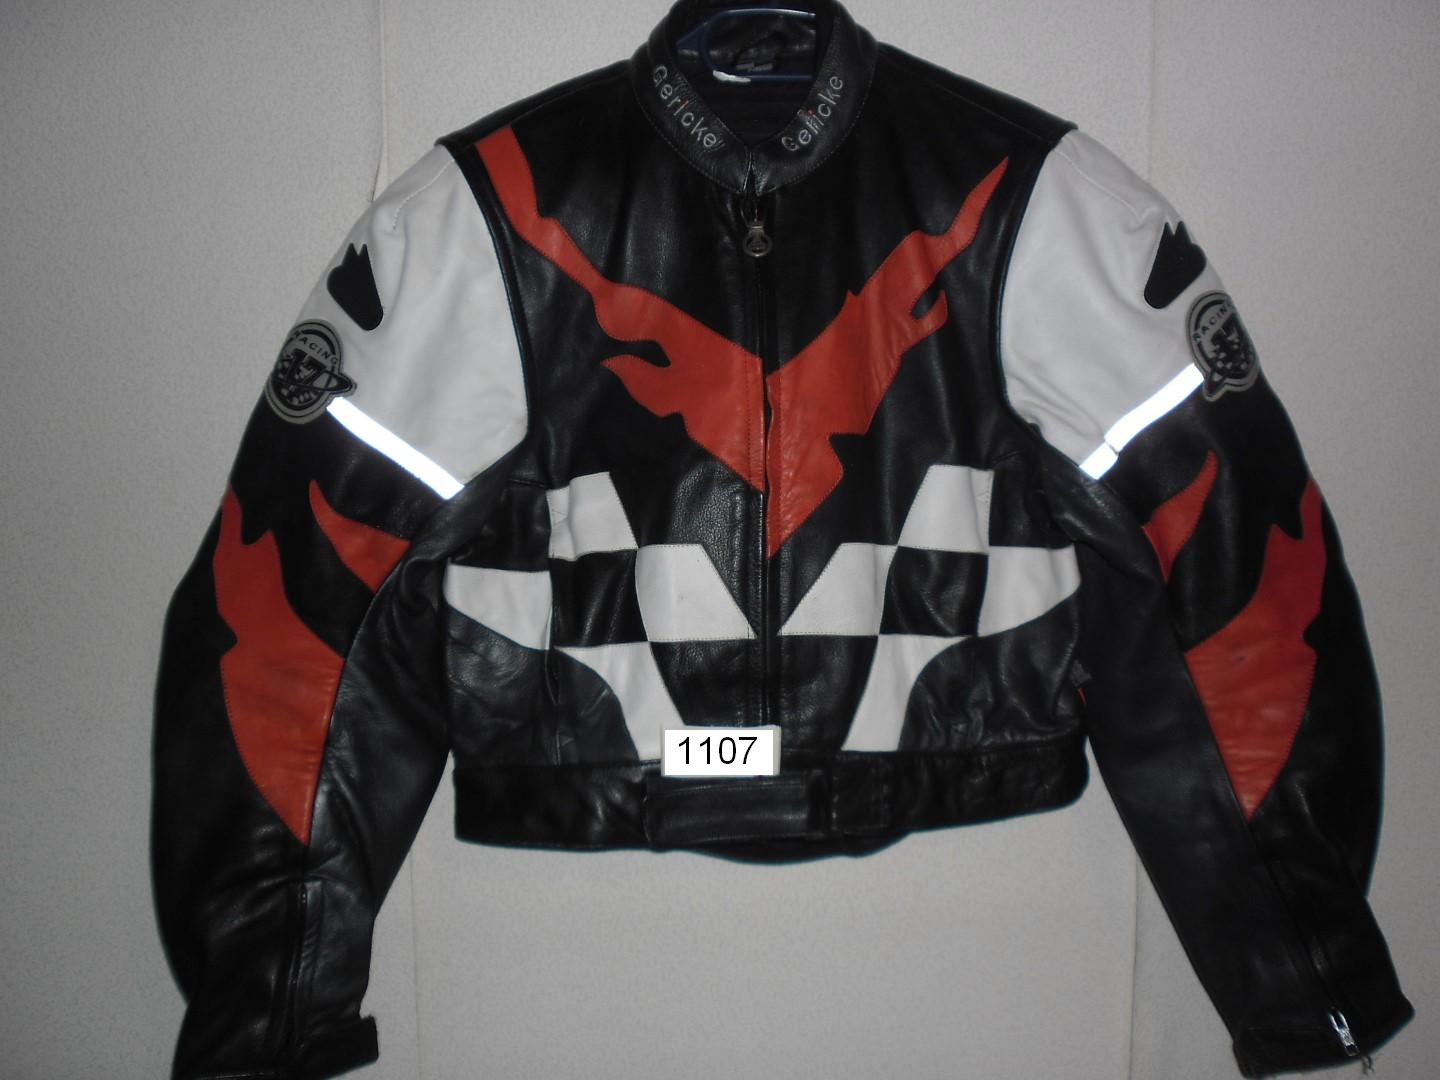 motorkárska kožená bunda HEIN GERICKE RACING veľ. 44, č. 1107